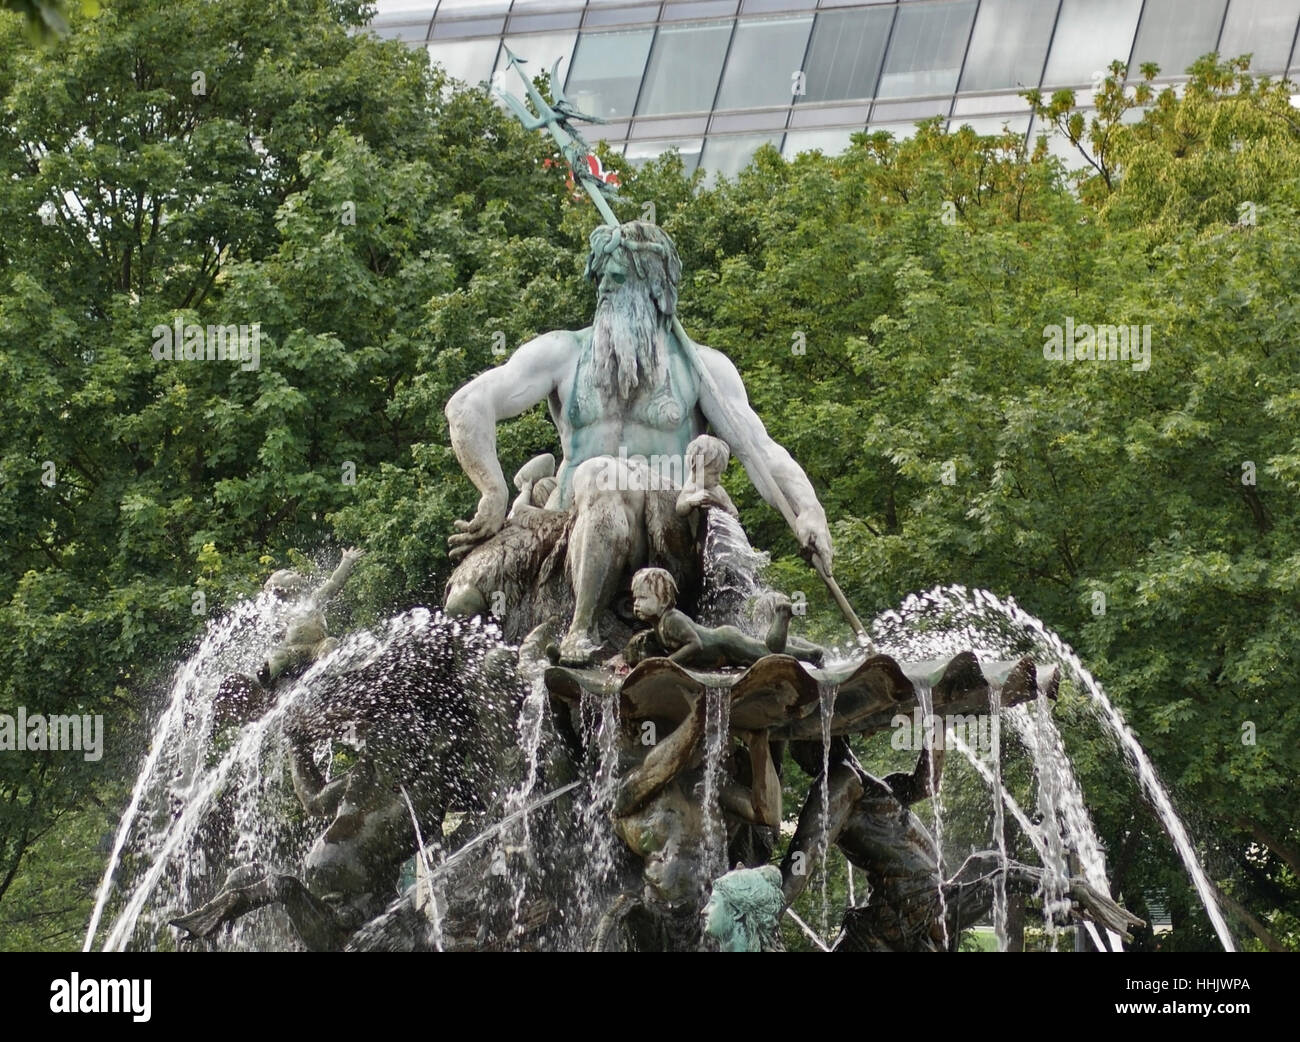 Dettaglio di una fontana a Berlino (Germania) la Fontana di Nettuno a Berlino è stato costruito nel 1891 ed è stato progettato da Reinhold Begas. Il dio greco Poseidone (Nettuno) è in centro. Le quattro donne intorno a lui rappresentano i quattro fiumi principali della Germania: Elba, Reno, Vistola e Oder. Foto Stock